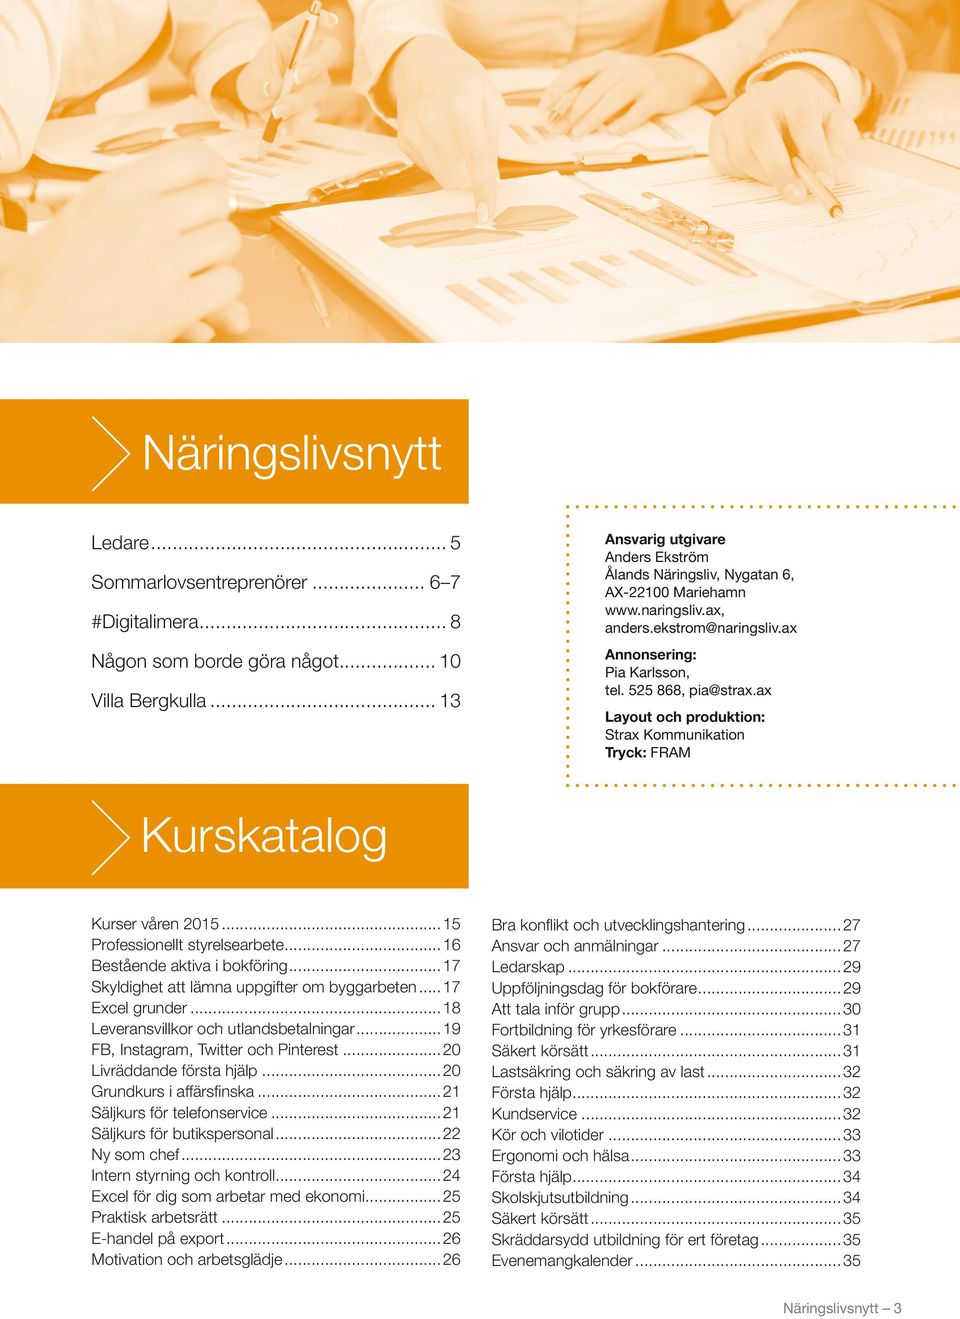 ax Layout och produktion: Strax Kommunikation Tryck: FRAM Kurskatalog Kurser våren 2015...15 Professionellt styrelsearbete...16 Bestående aktiva i bokföring.